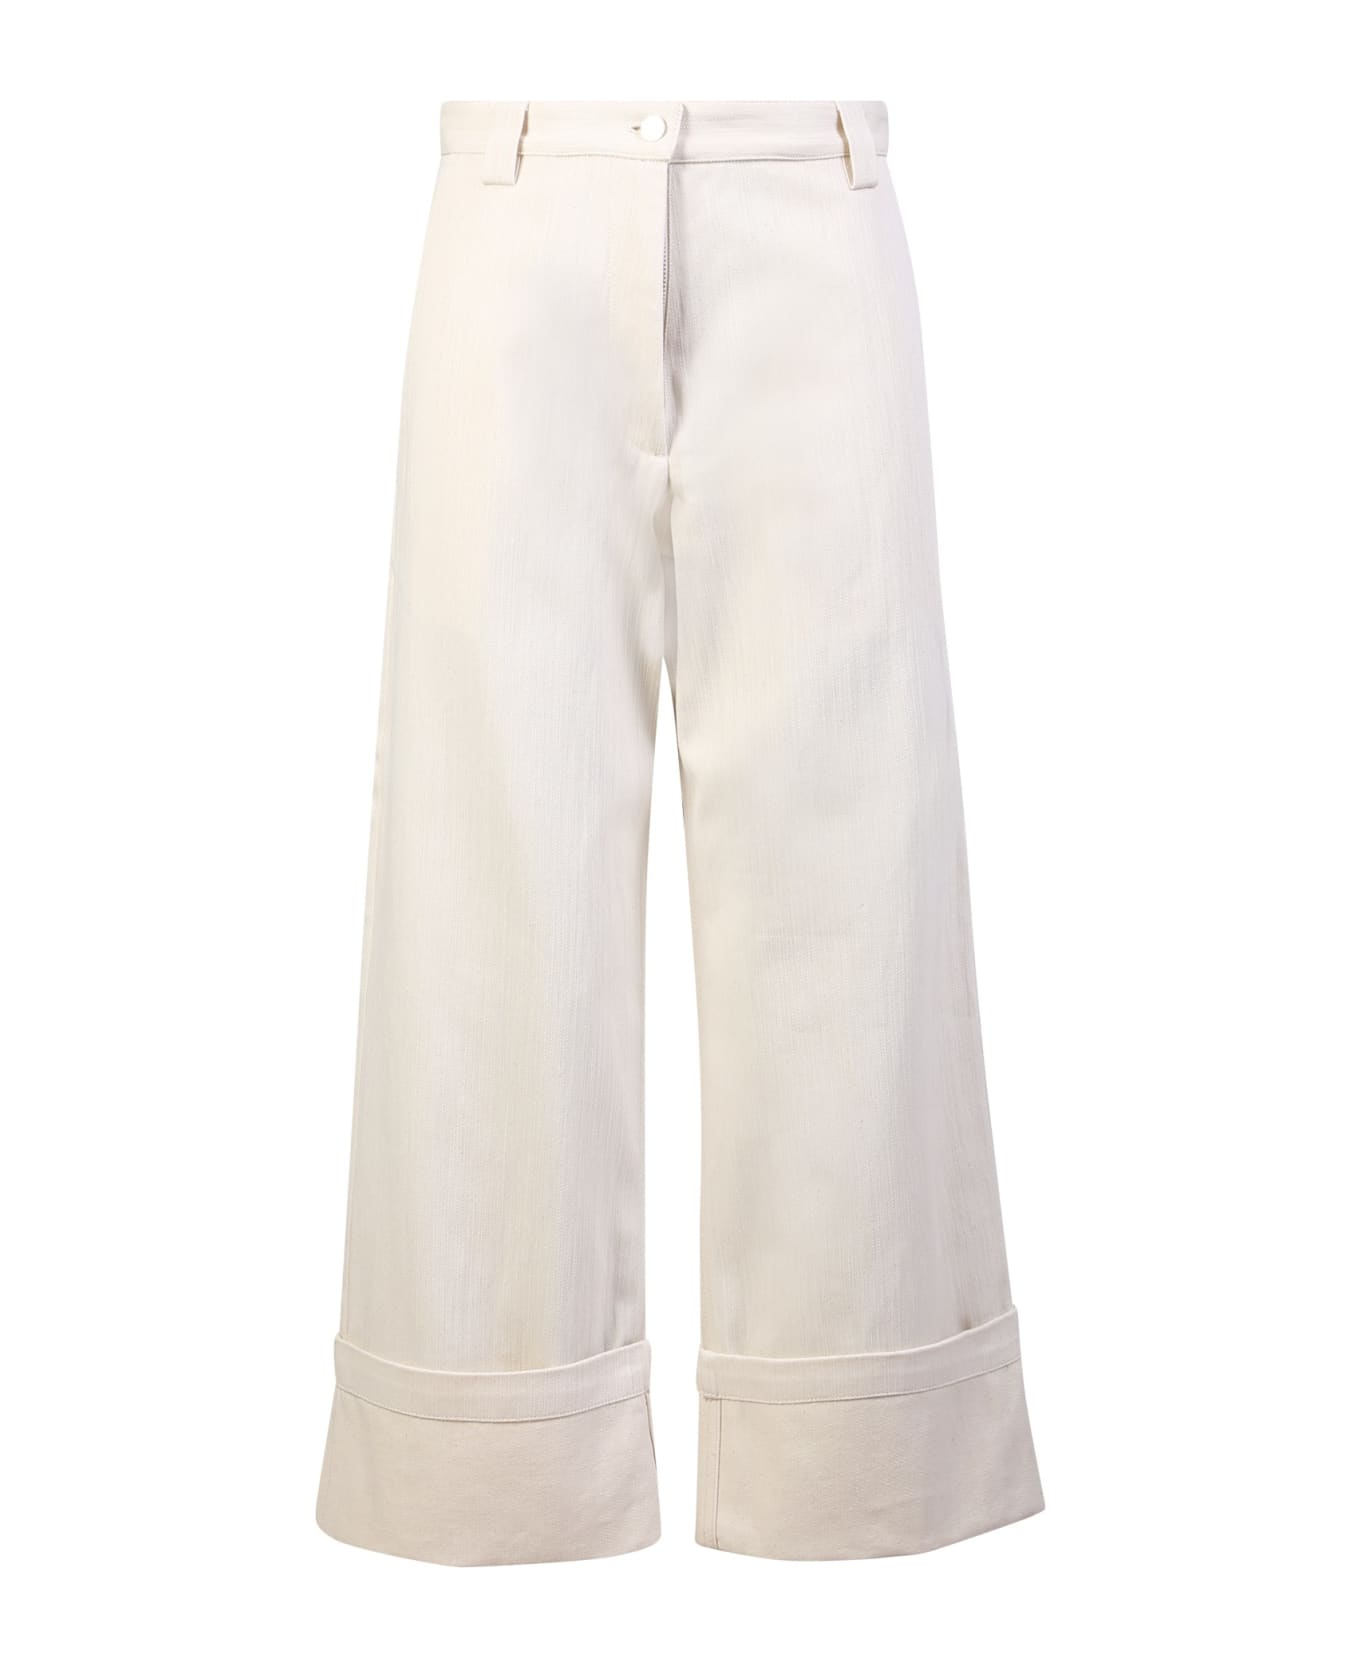 Moncler Genius Turn-up Pants - White